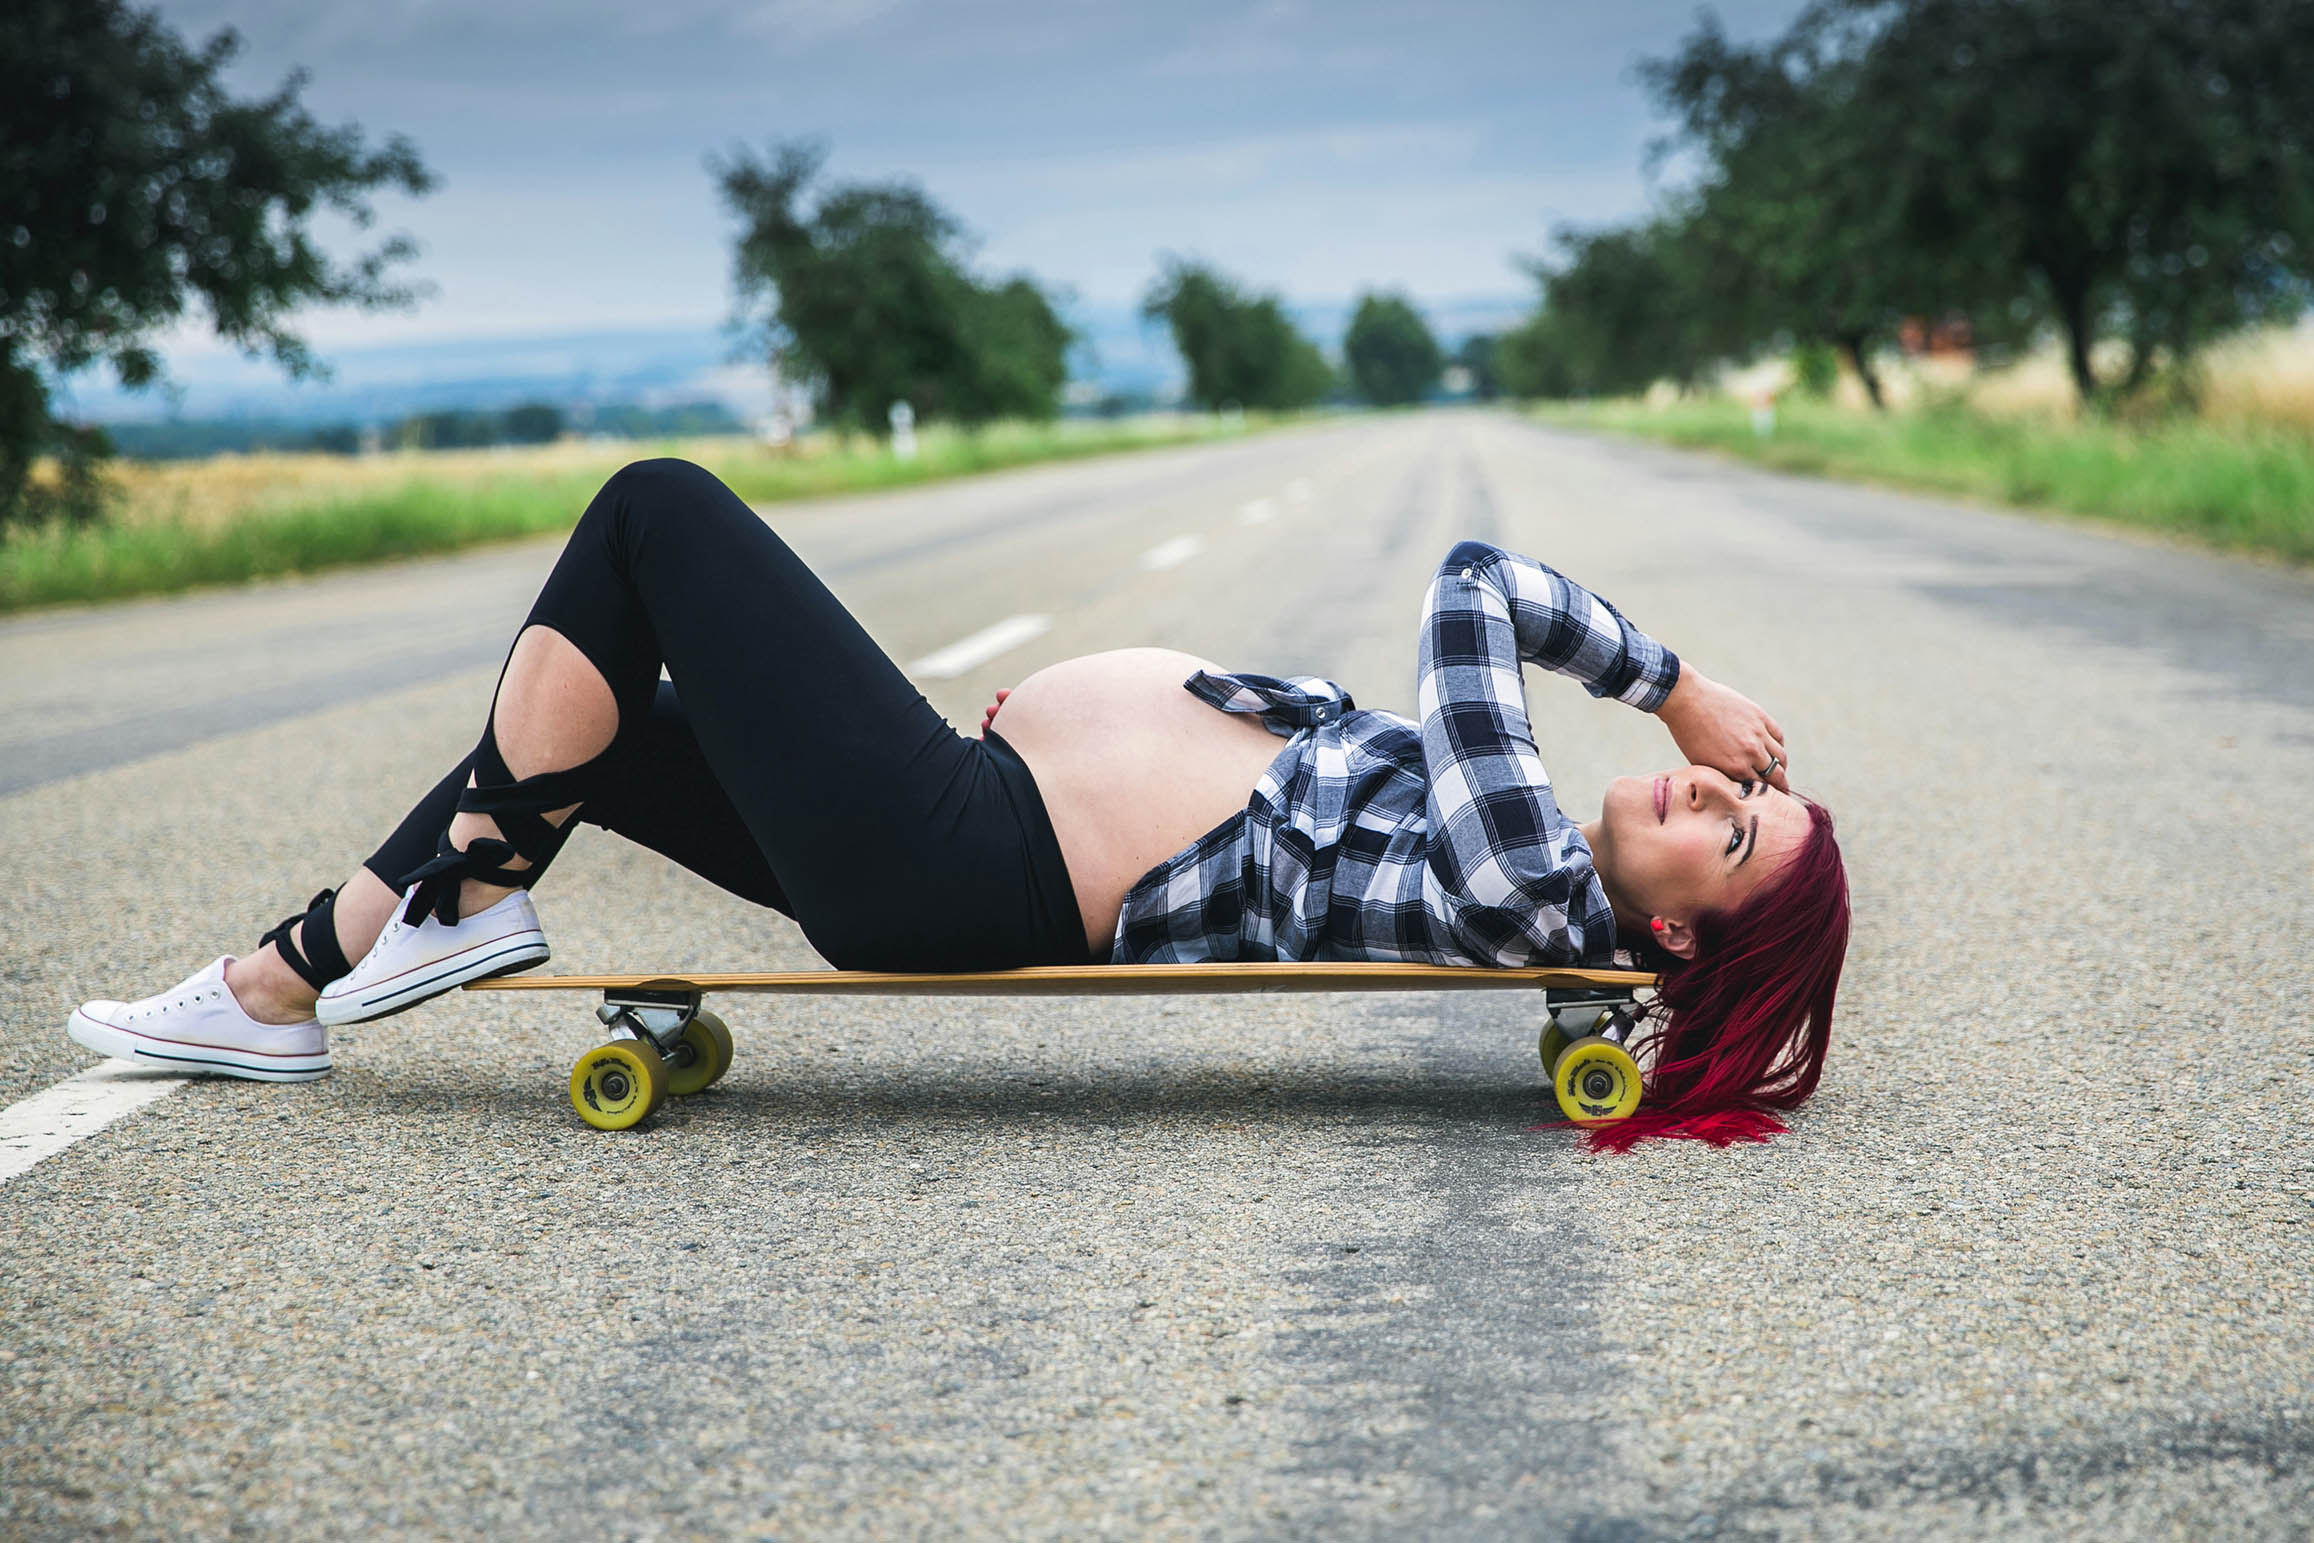 _tehotenske_foceni_skateboard